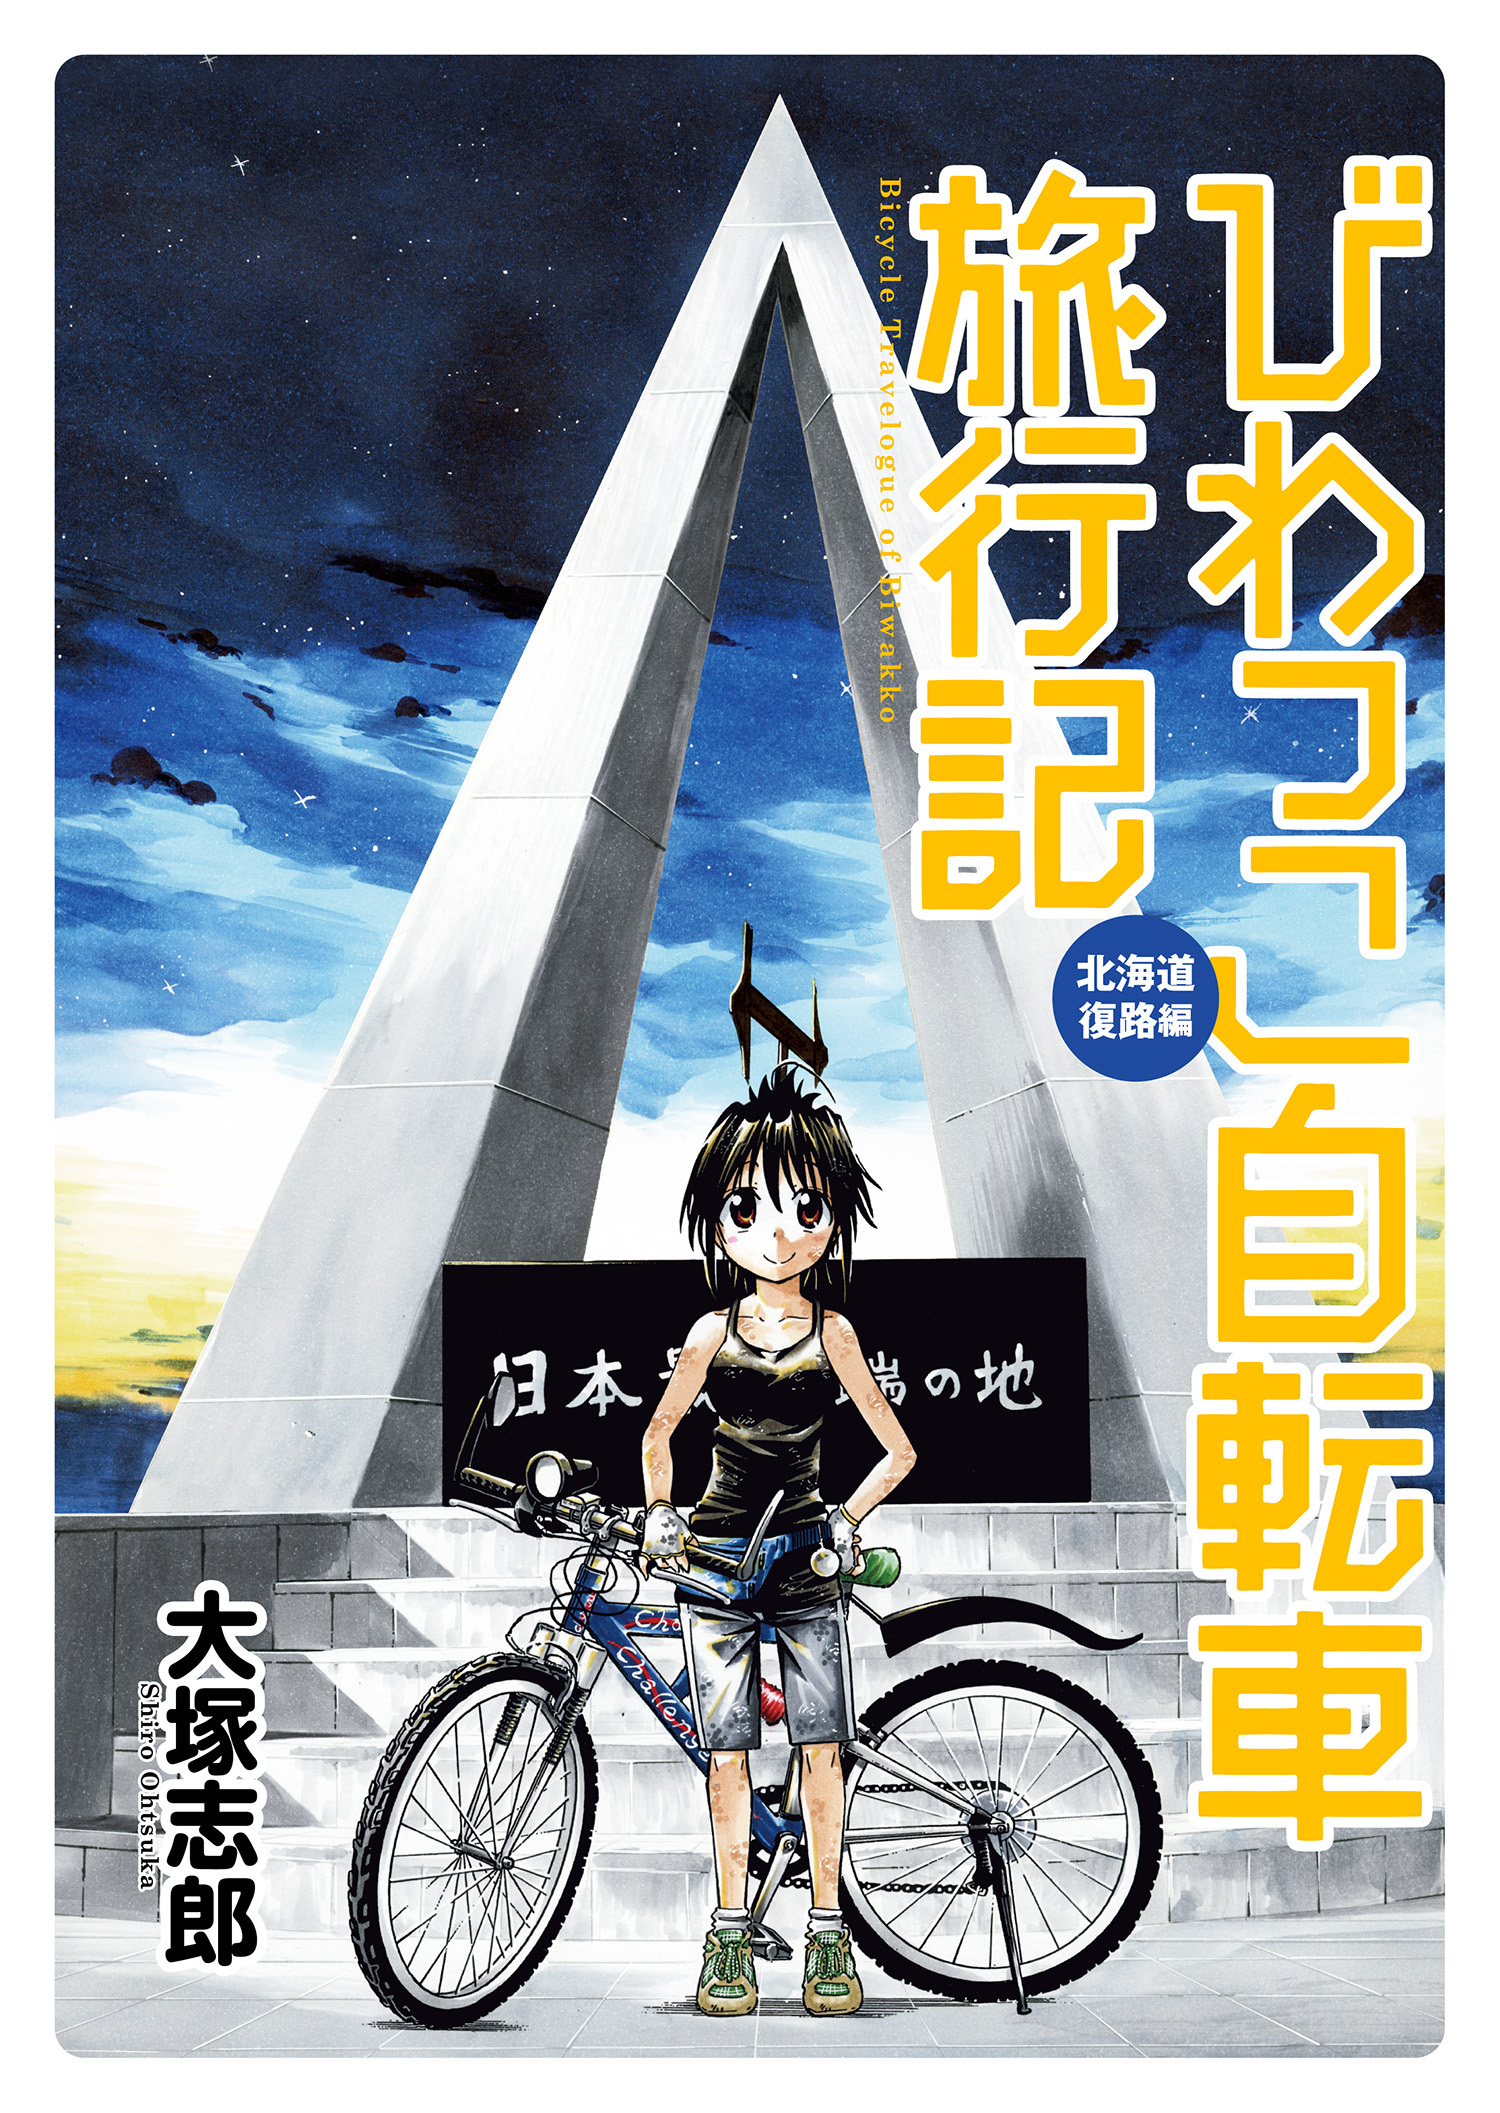 びわっこ自転車旅行記 北海道復路編 ストーリアダッシュ連載版vol 1 無料 試し読みなら Amebaマンガ 旧 読書のお時間です